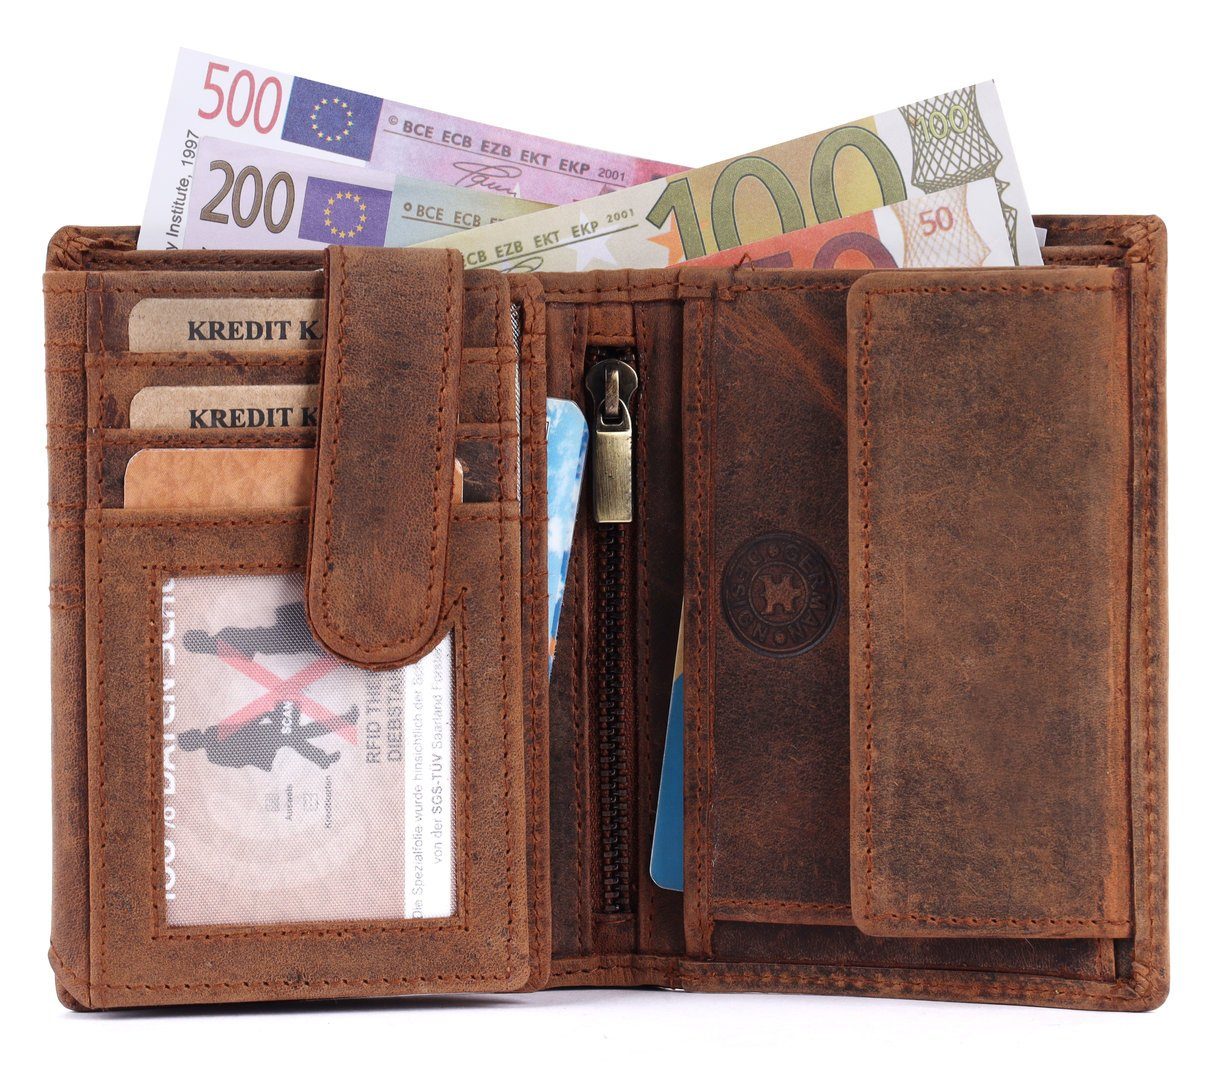 Männerbörse SHG Büffelleder Brieftasche mit Geldbörse Portemonnaie, Herren Schutz RFID Börse Münzfach Leder Lederbörse